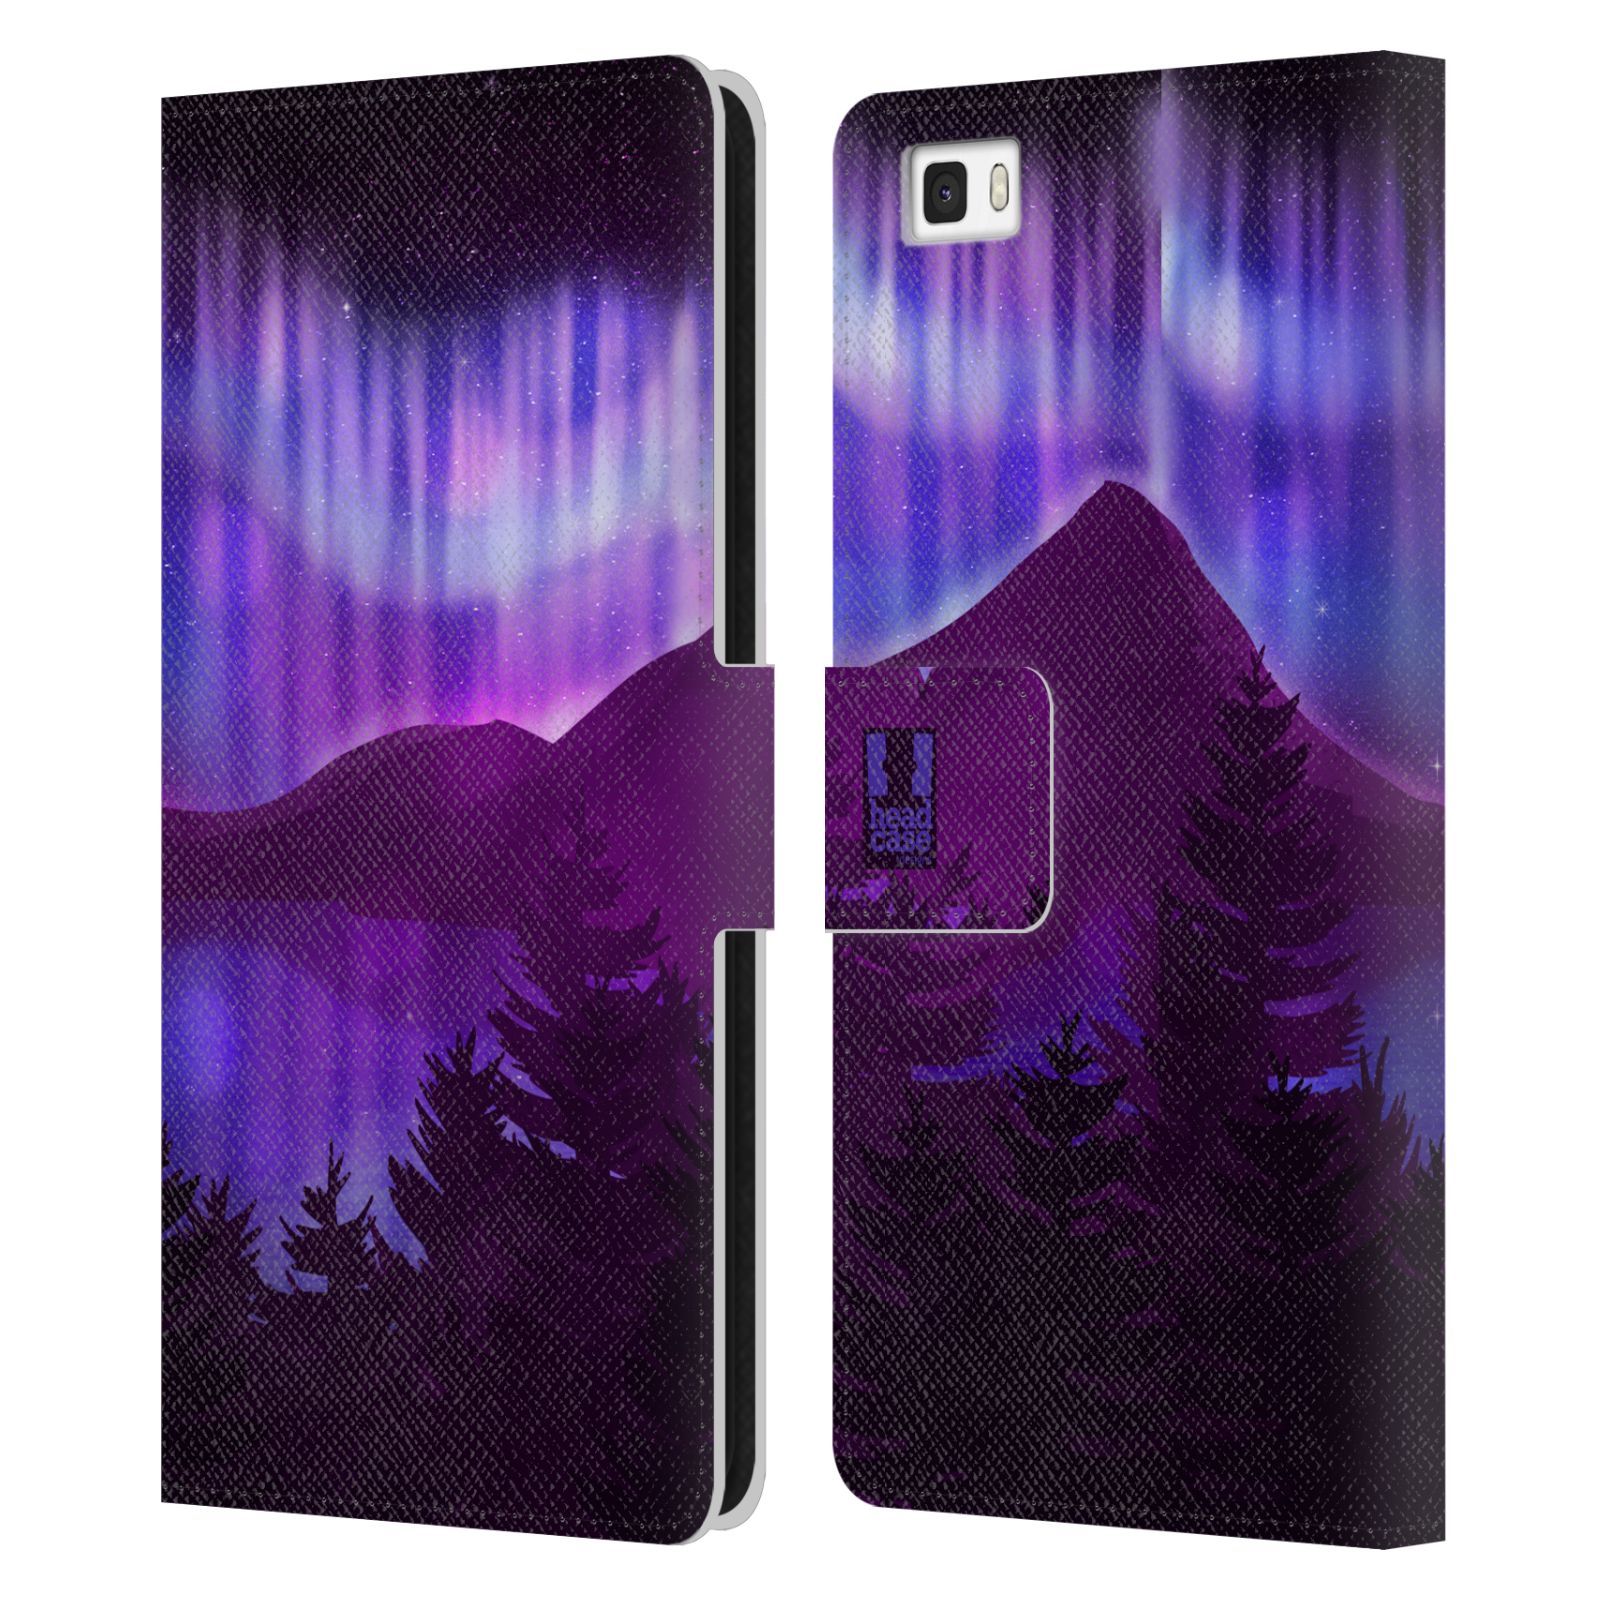 Pouzdro na mobil Huawei P8 LITE - HEAD CASE - Hory a lesy fialový odstín